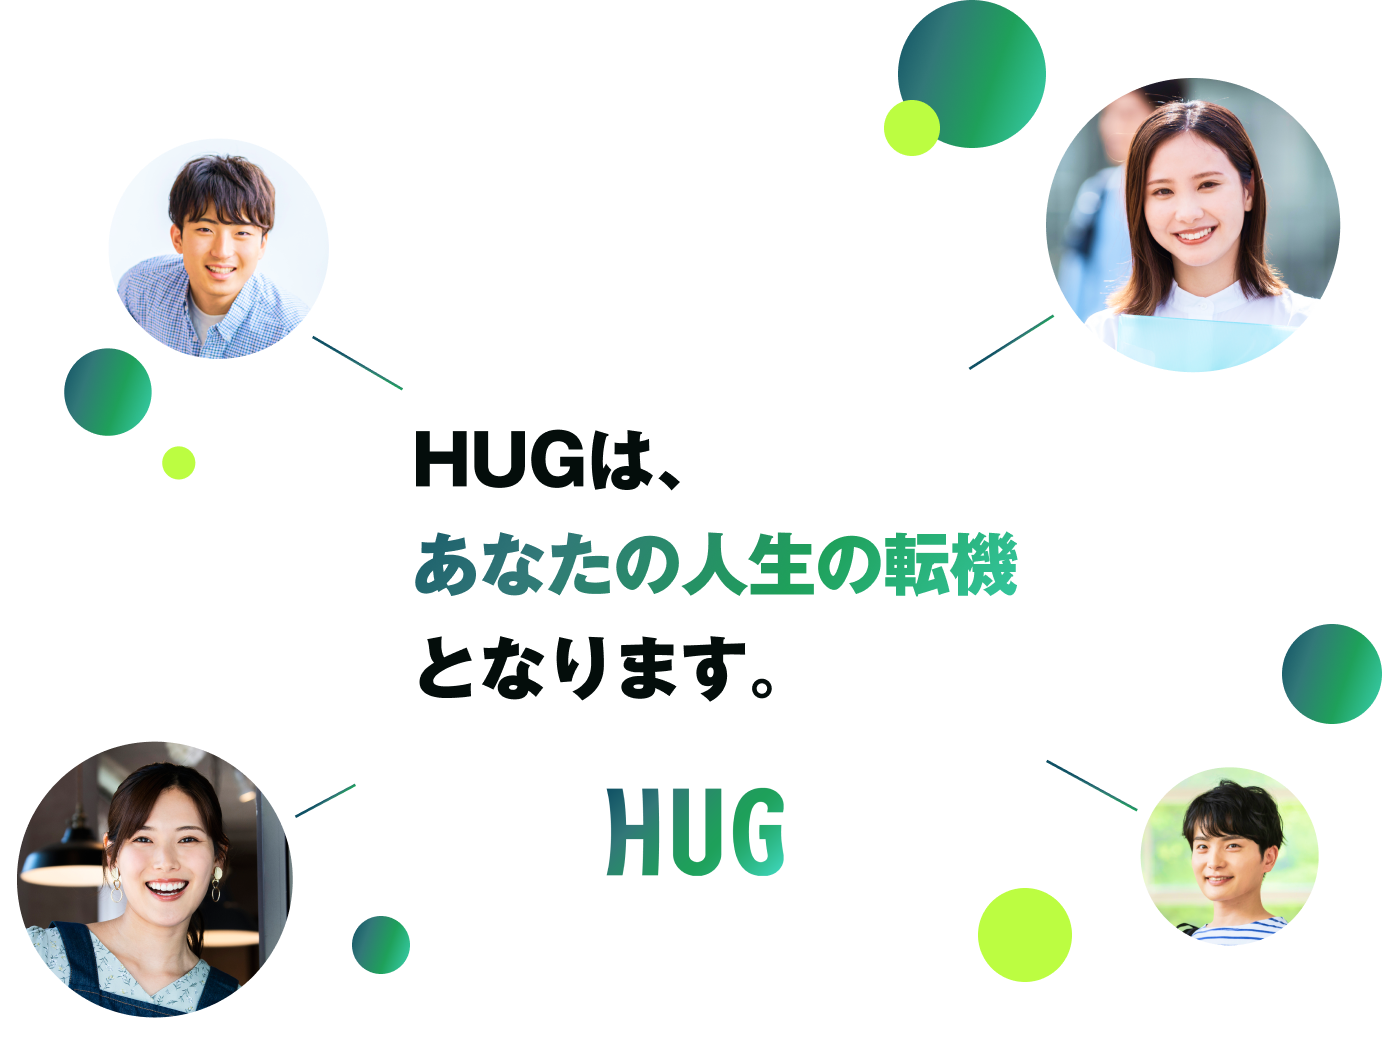 HUGは、あなたの人生の転機となります。